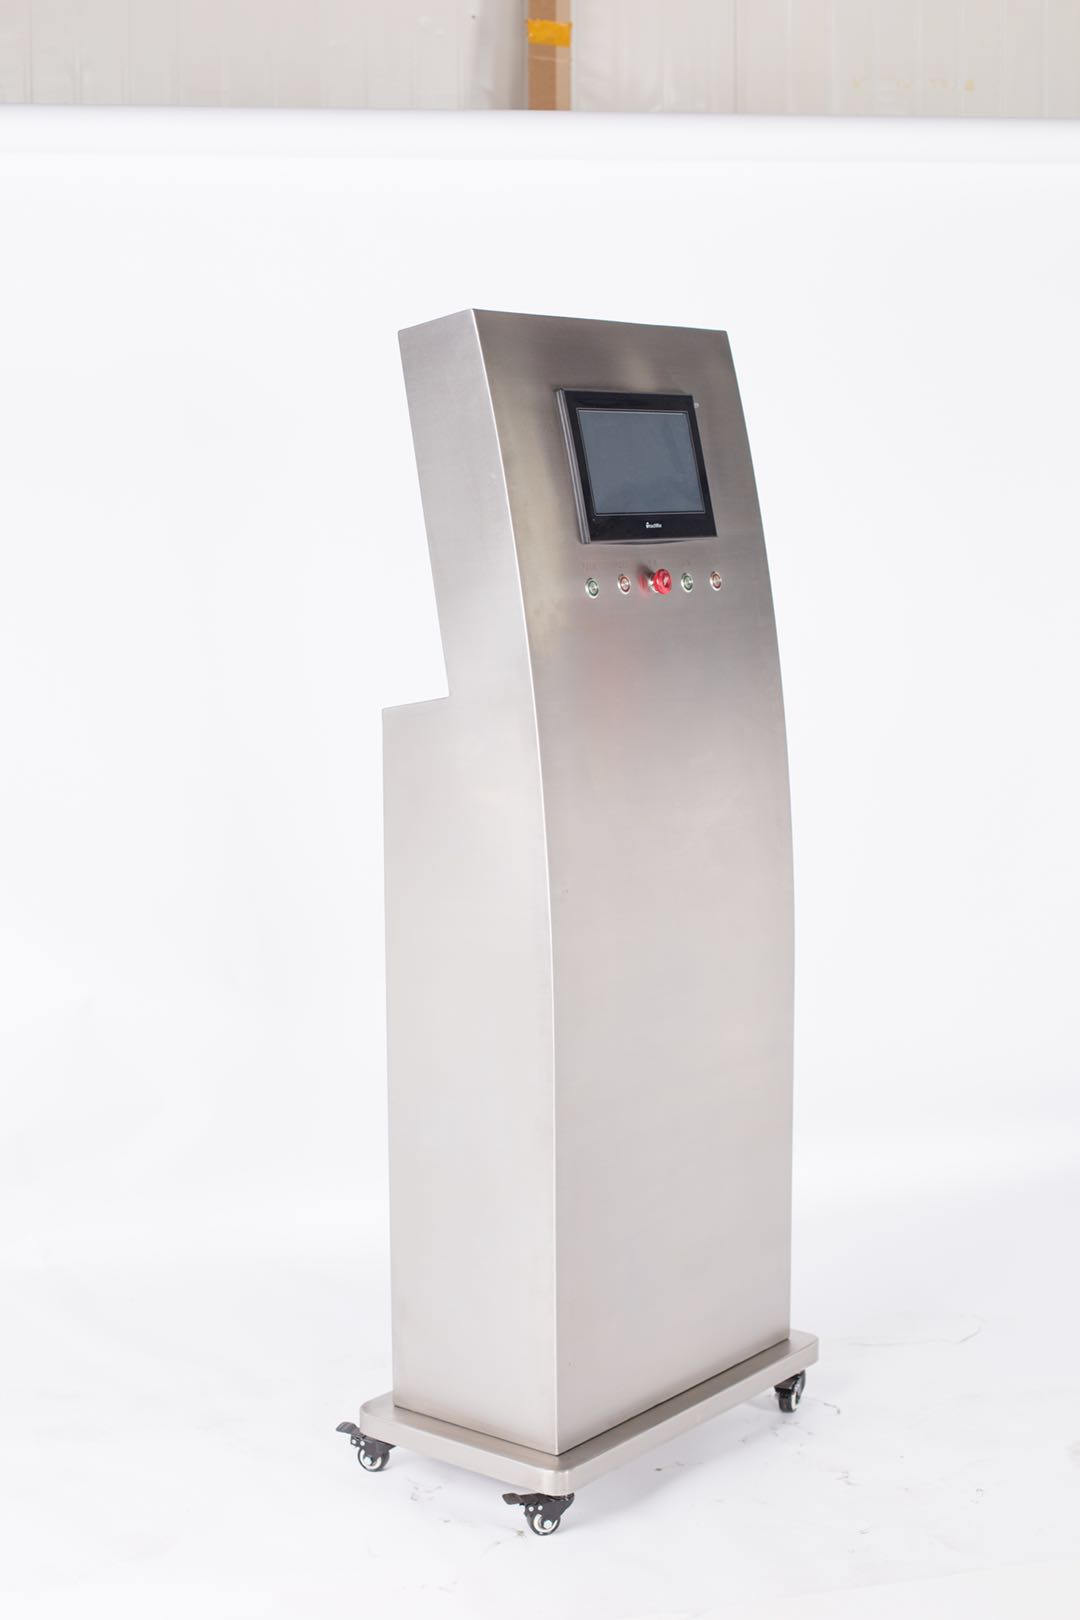 Sistema de detecção automática de vácuo para latas